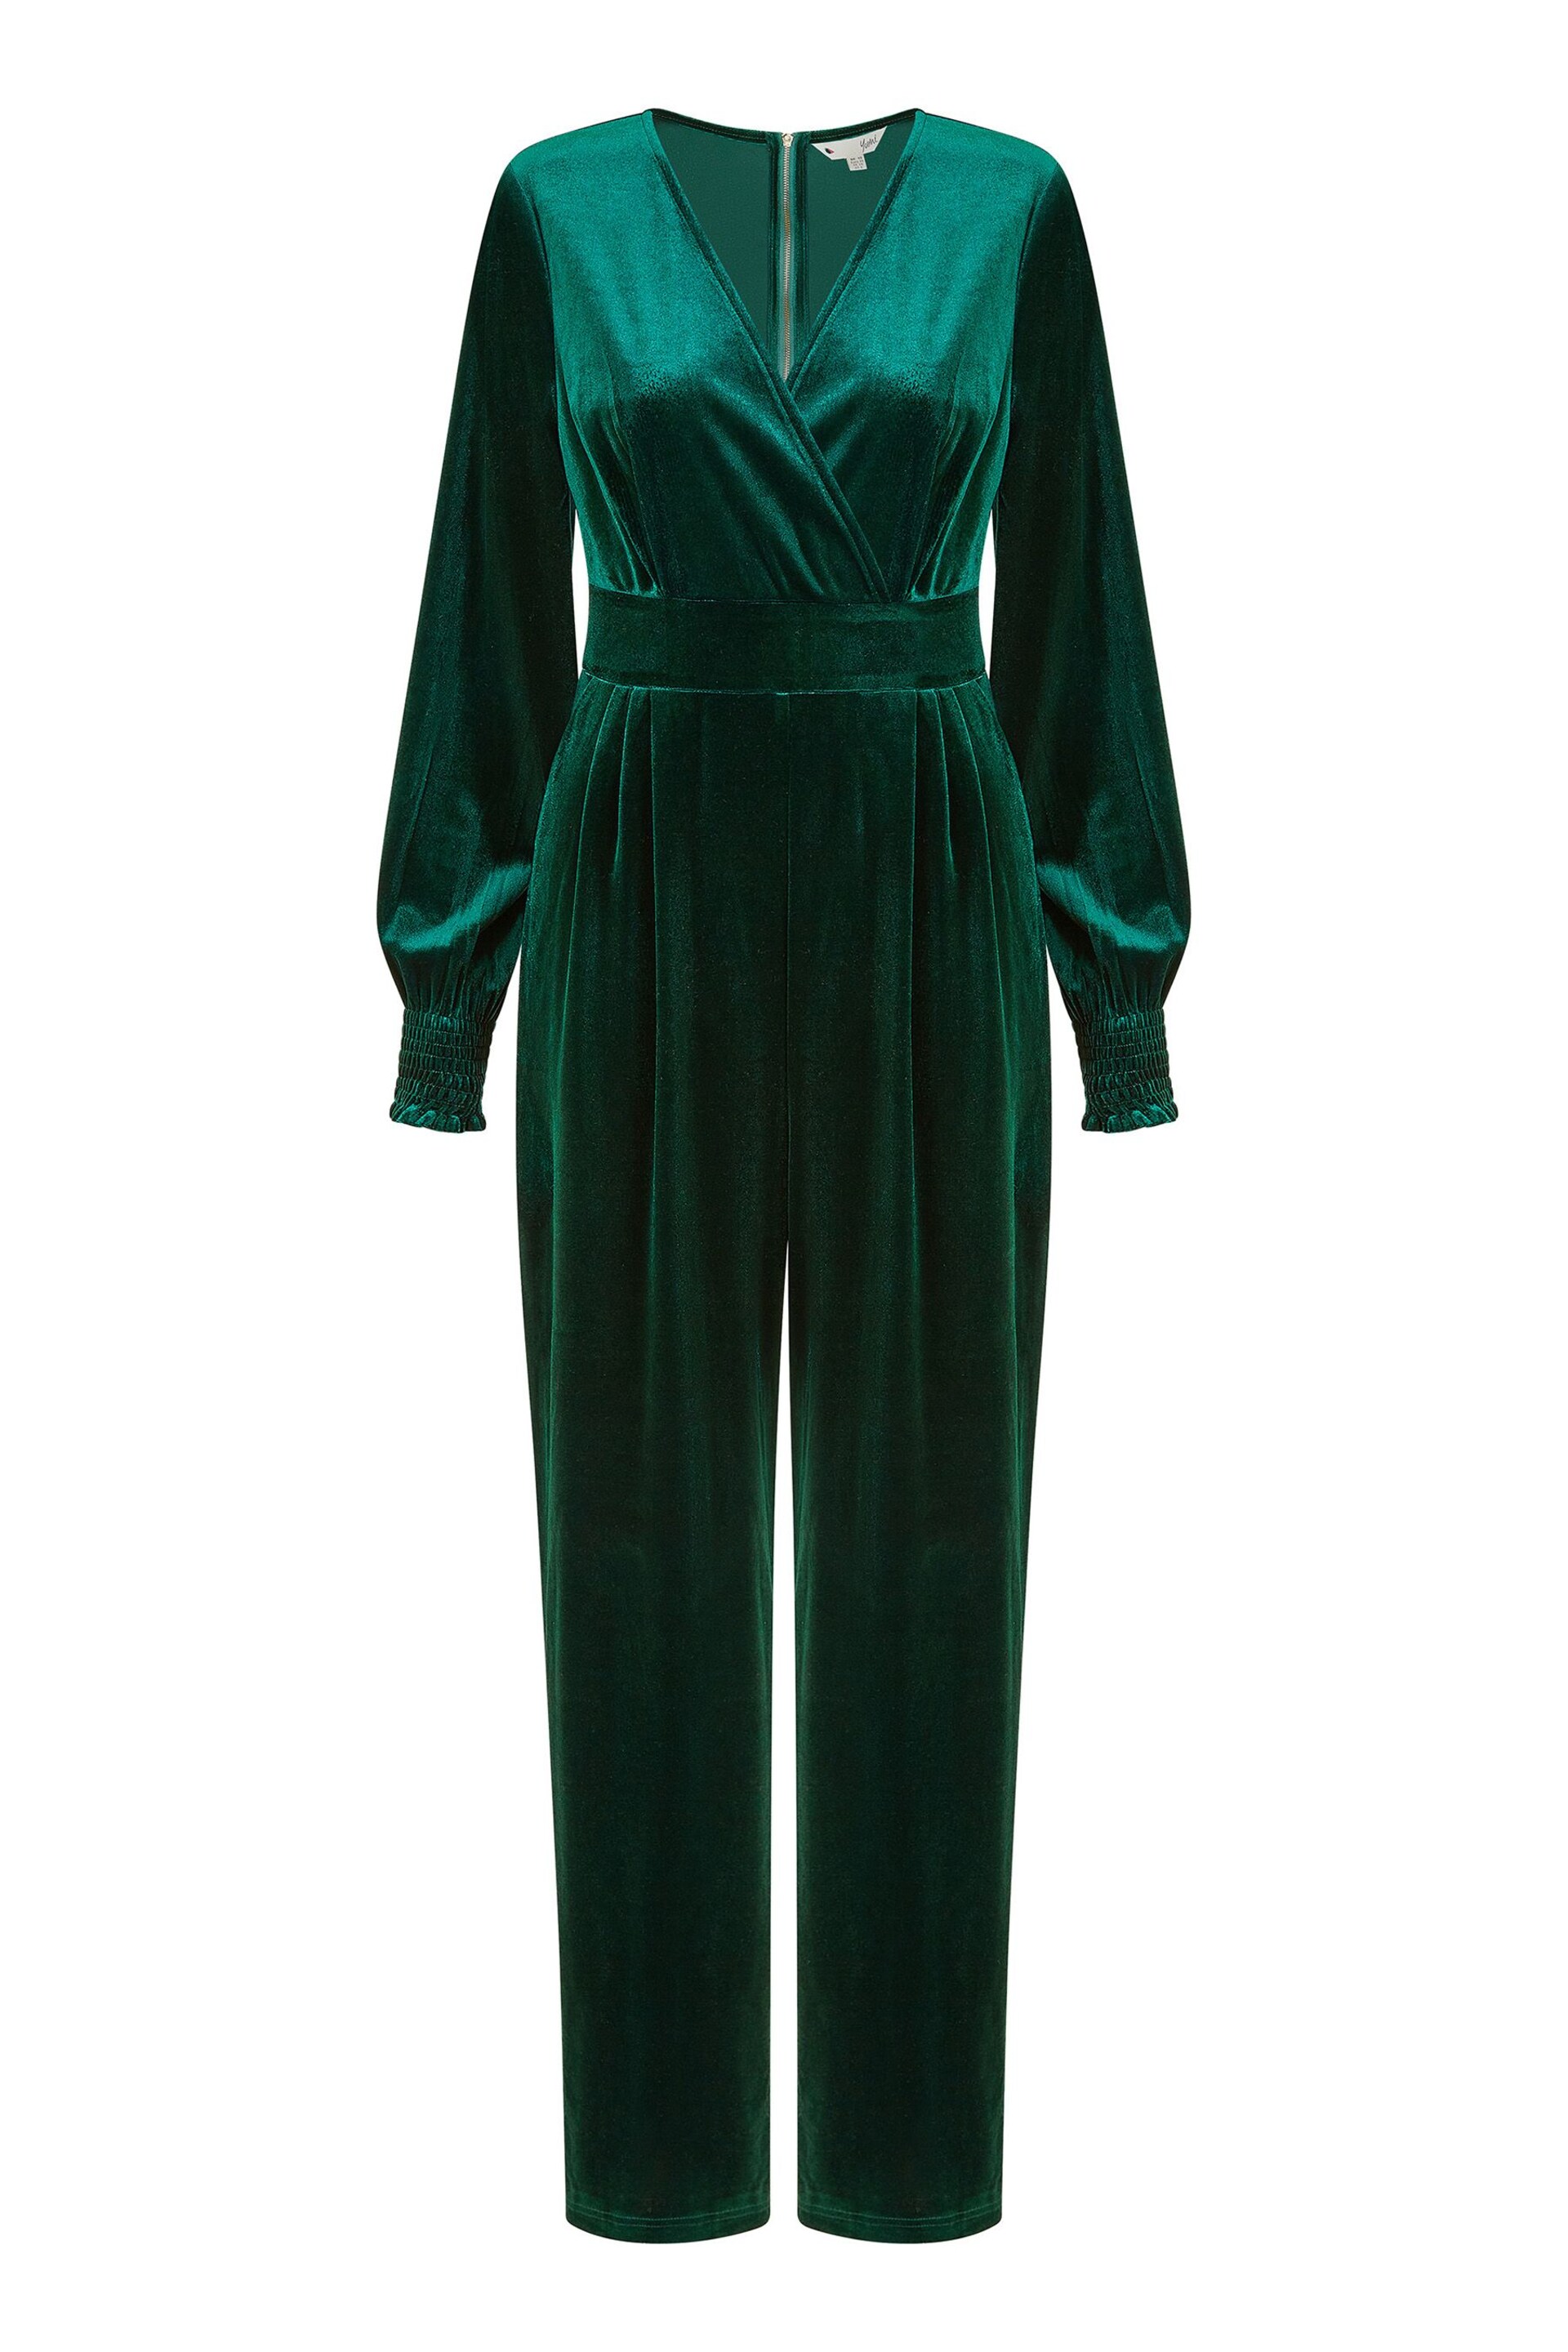 Yumi Green Velvet Long sleeve Jumpsuit - Image 4 of 4